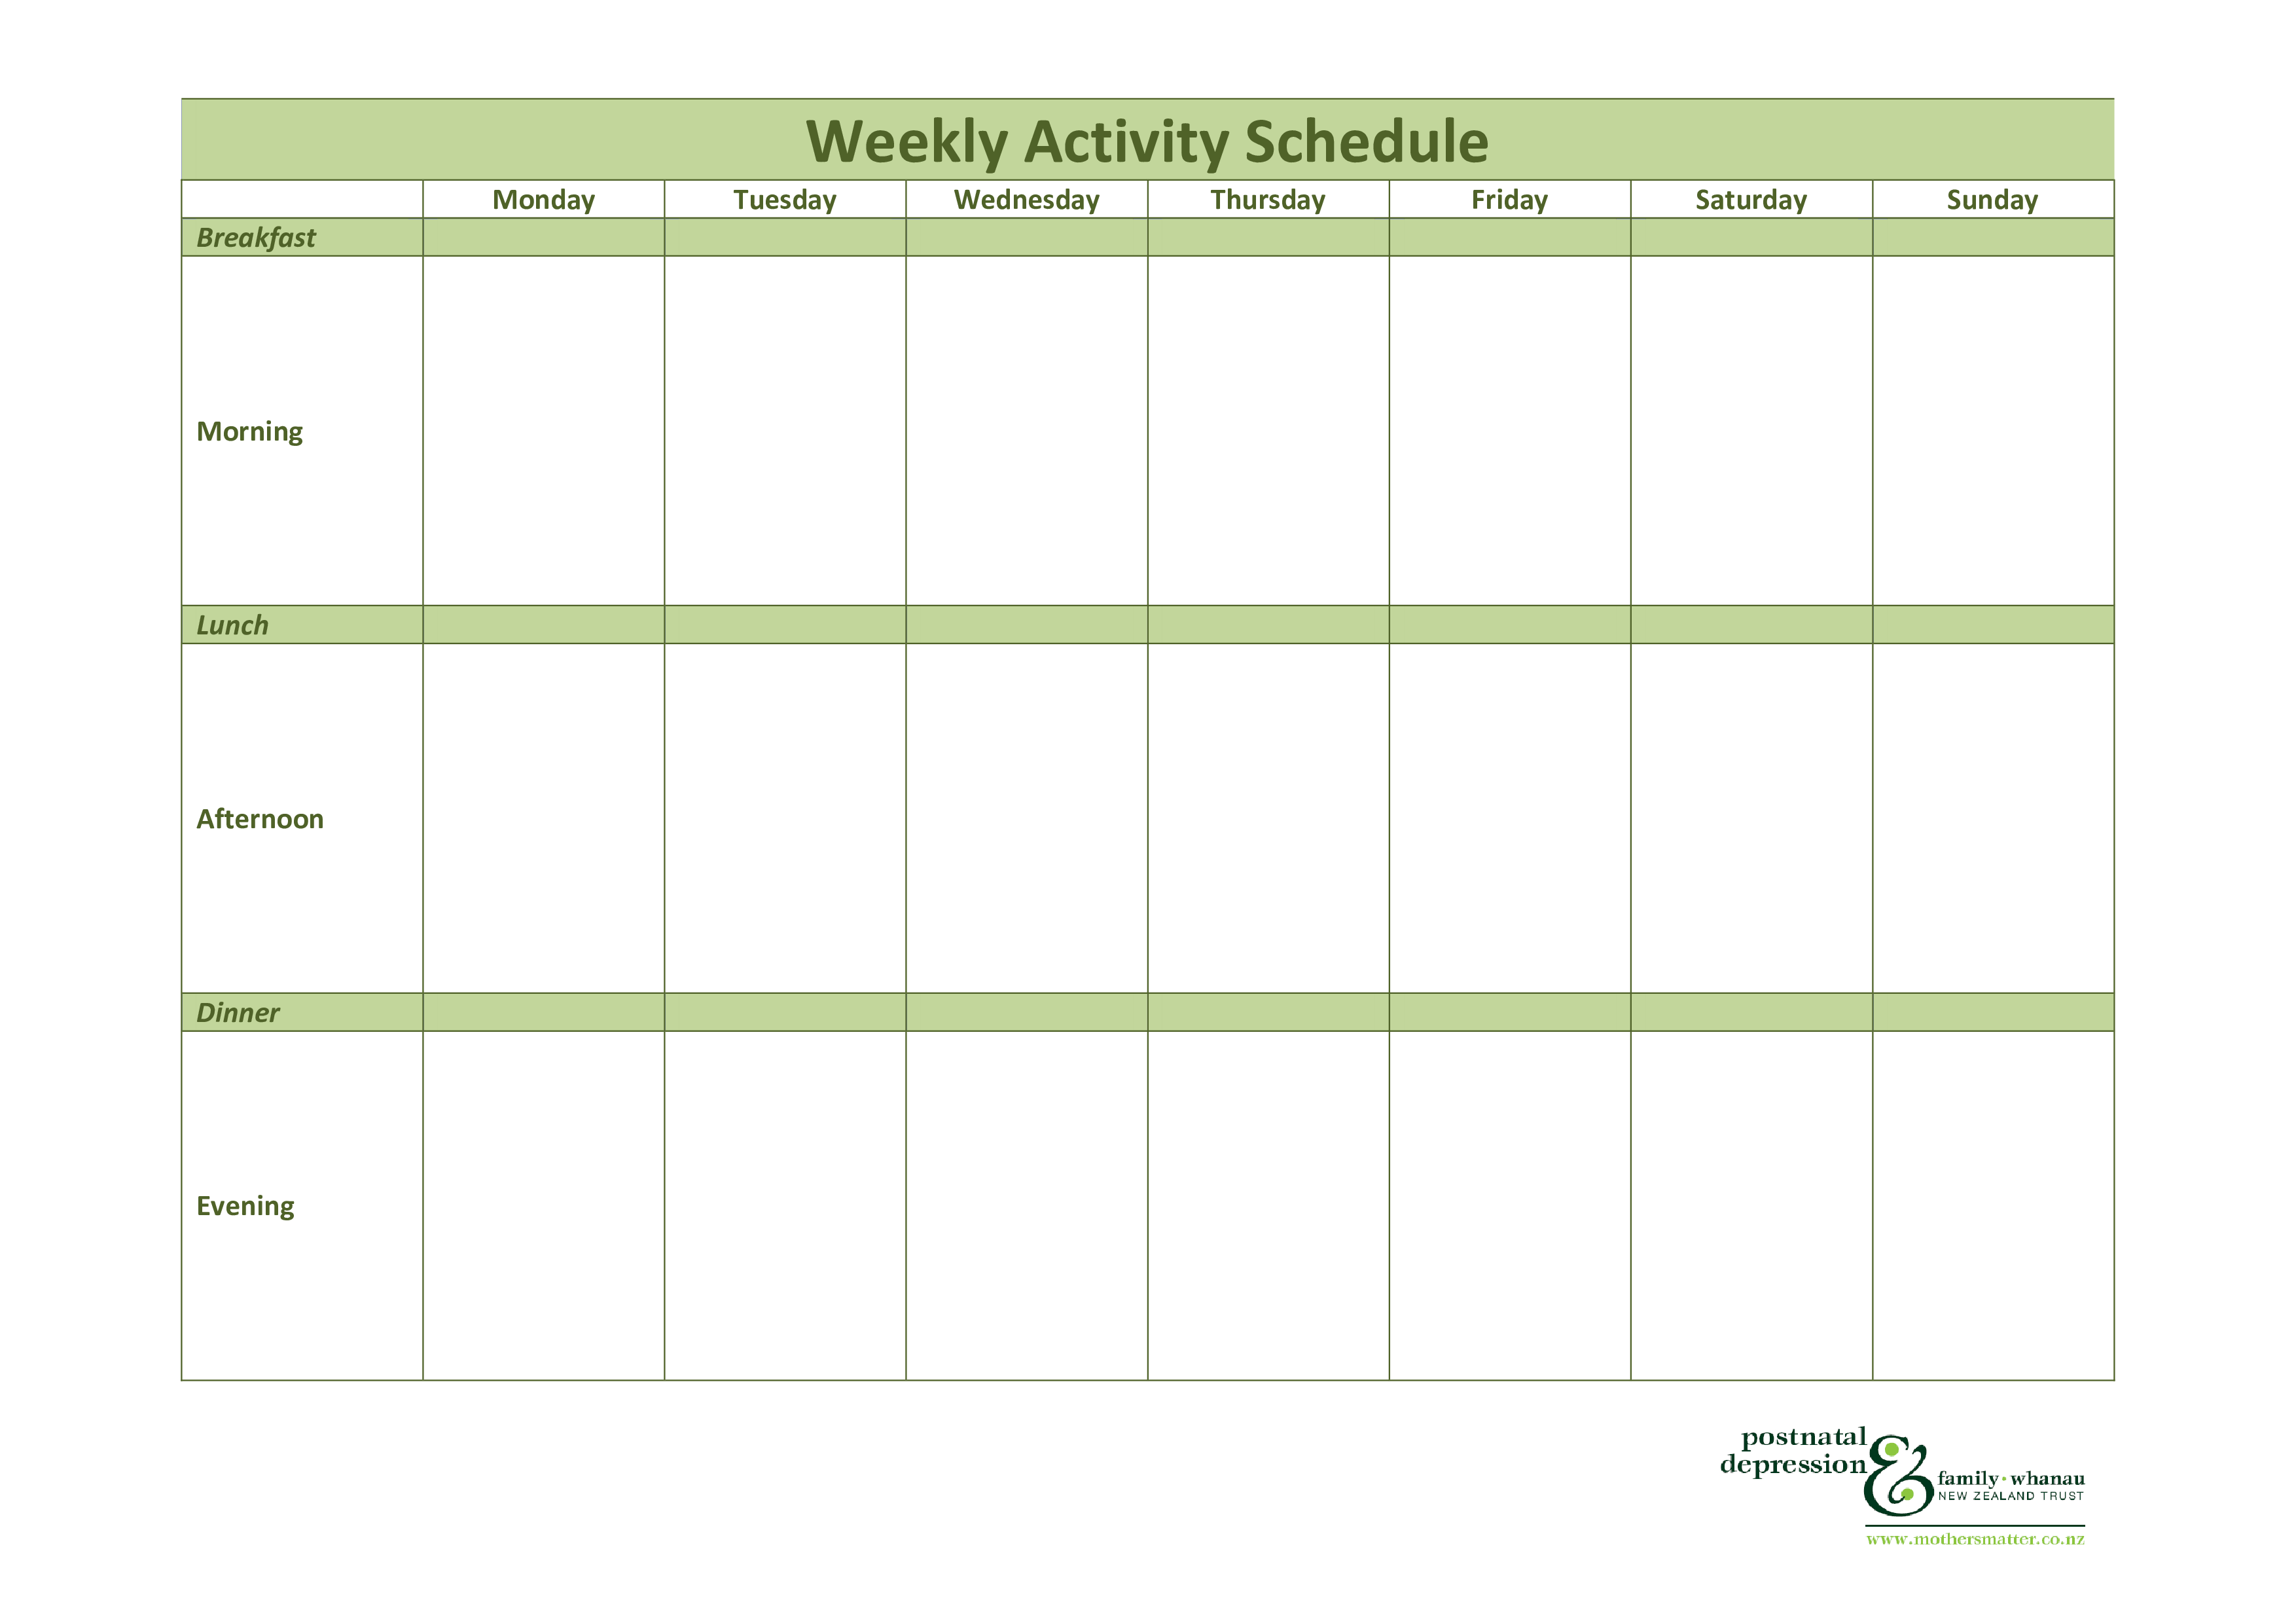 weekly activity schedule plantilla imagen principal